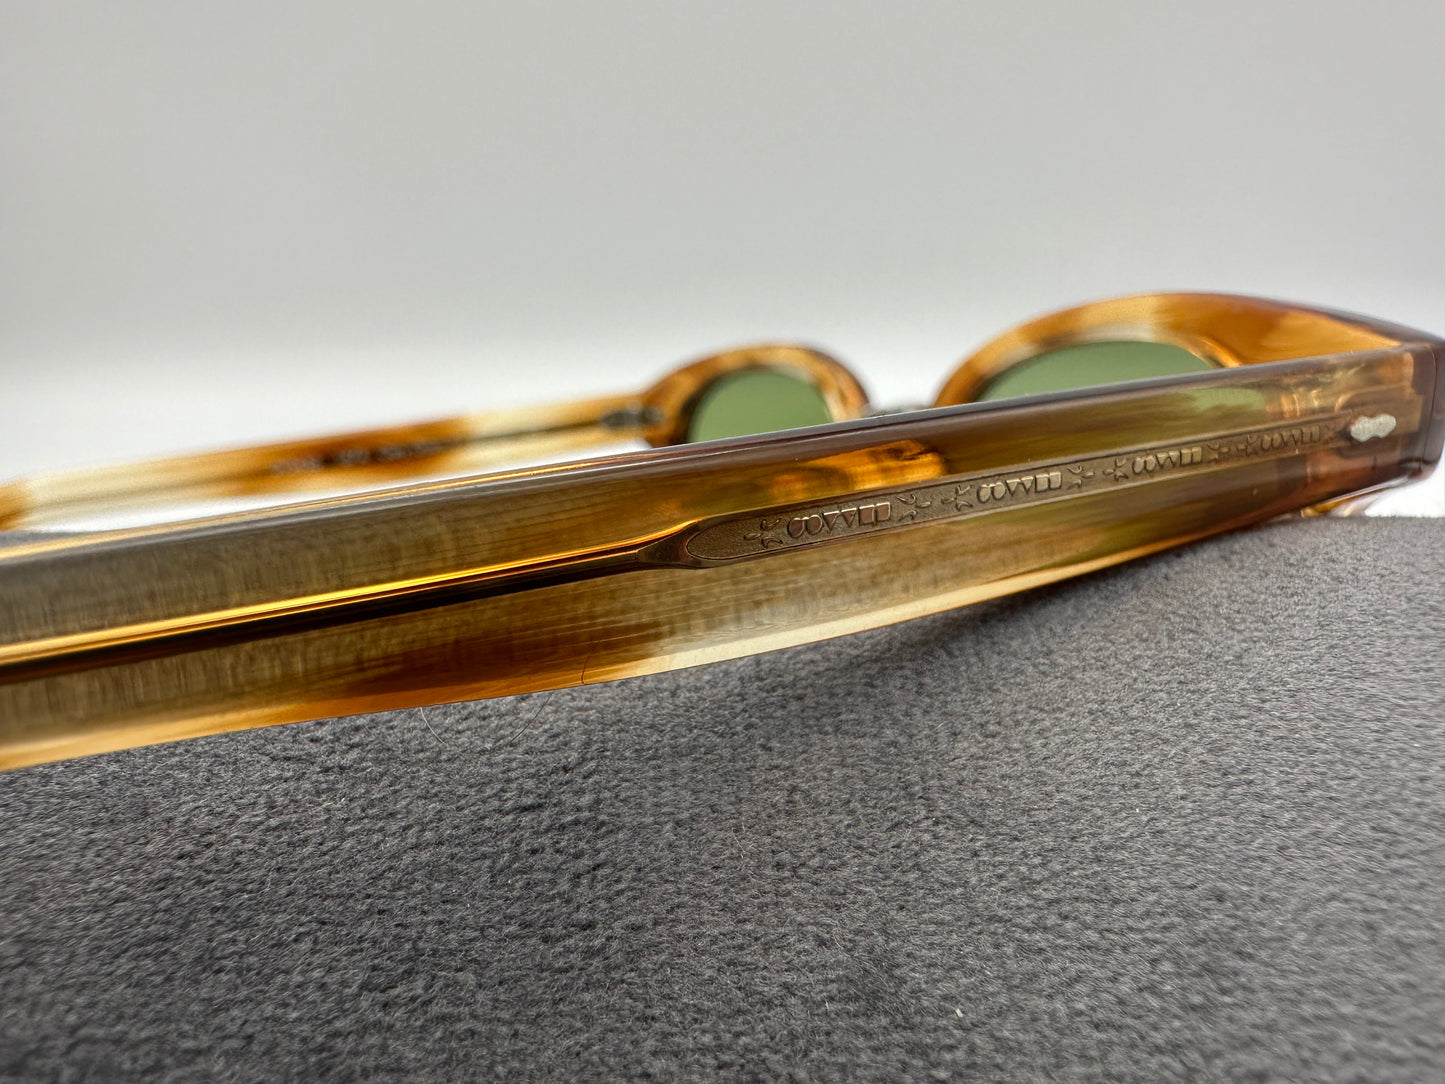 Oliver Peoples Cary Grant 2 50mm Honey VSB Green Custom Glass Lenses